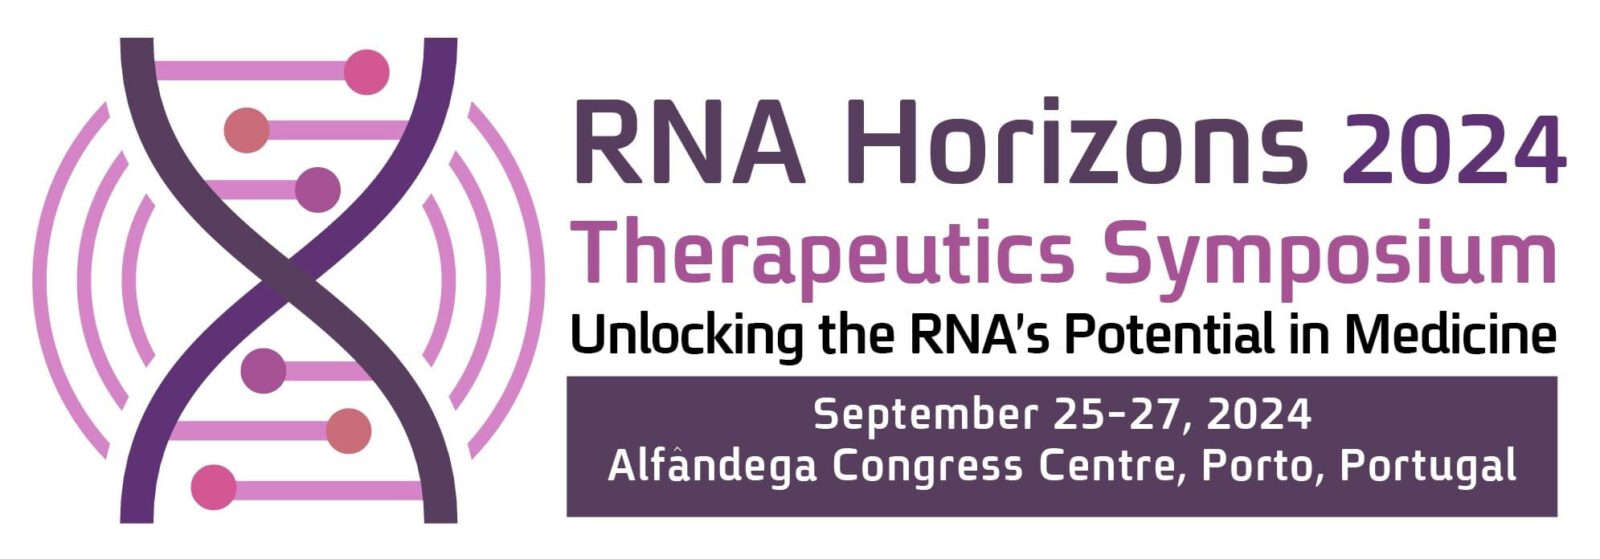 RNA Horizons 2024